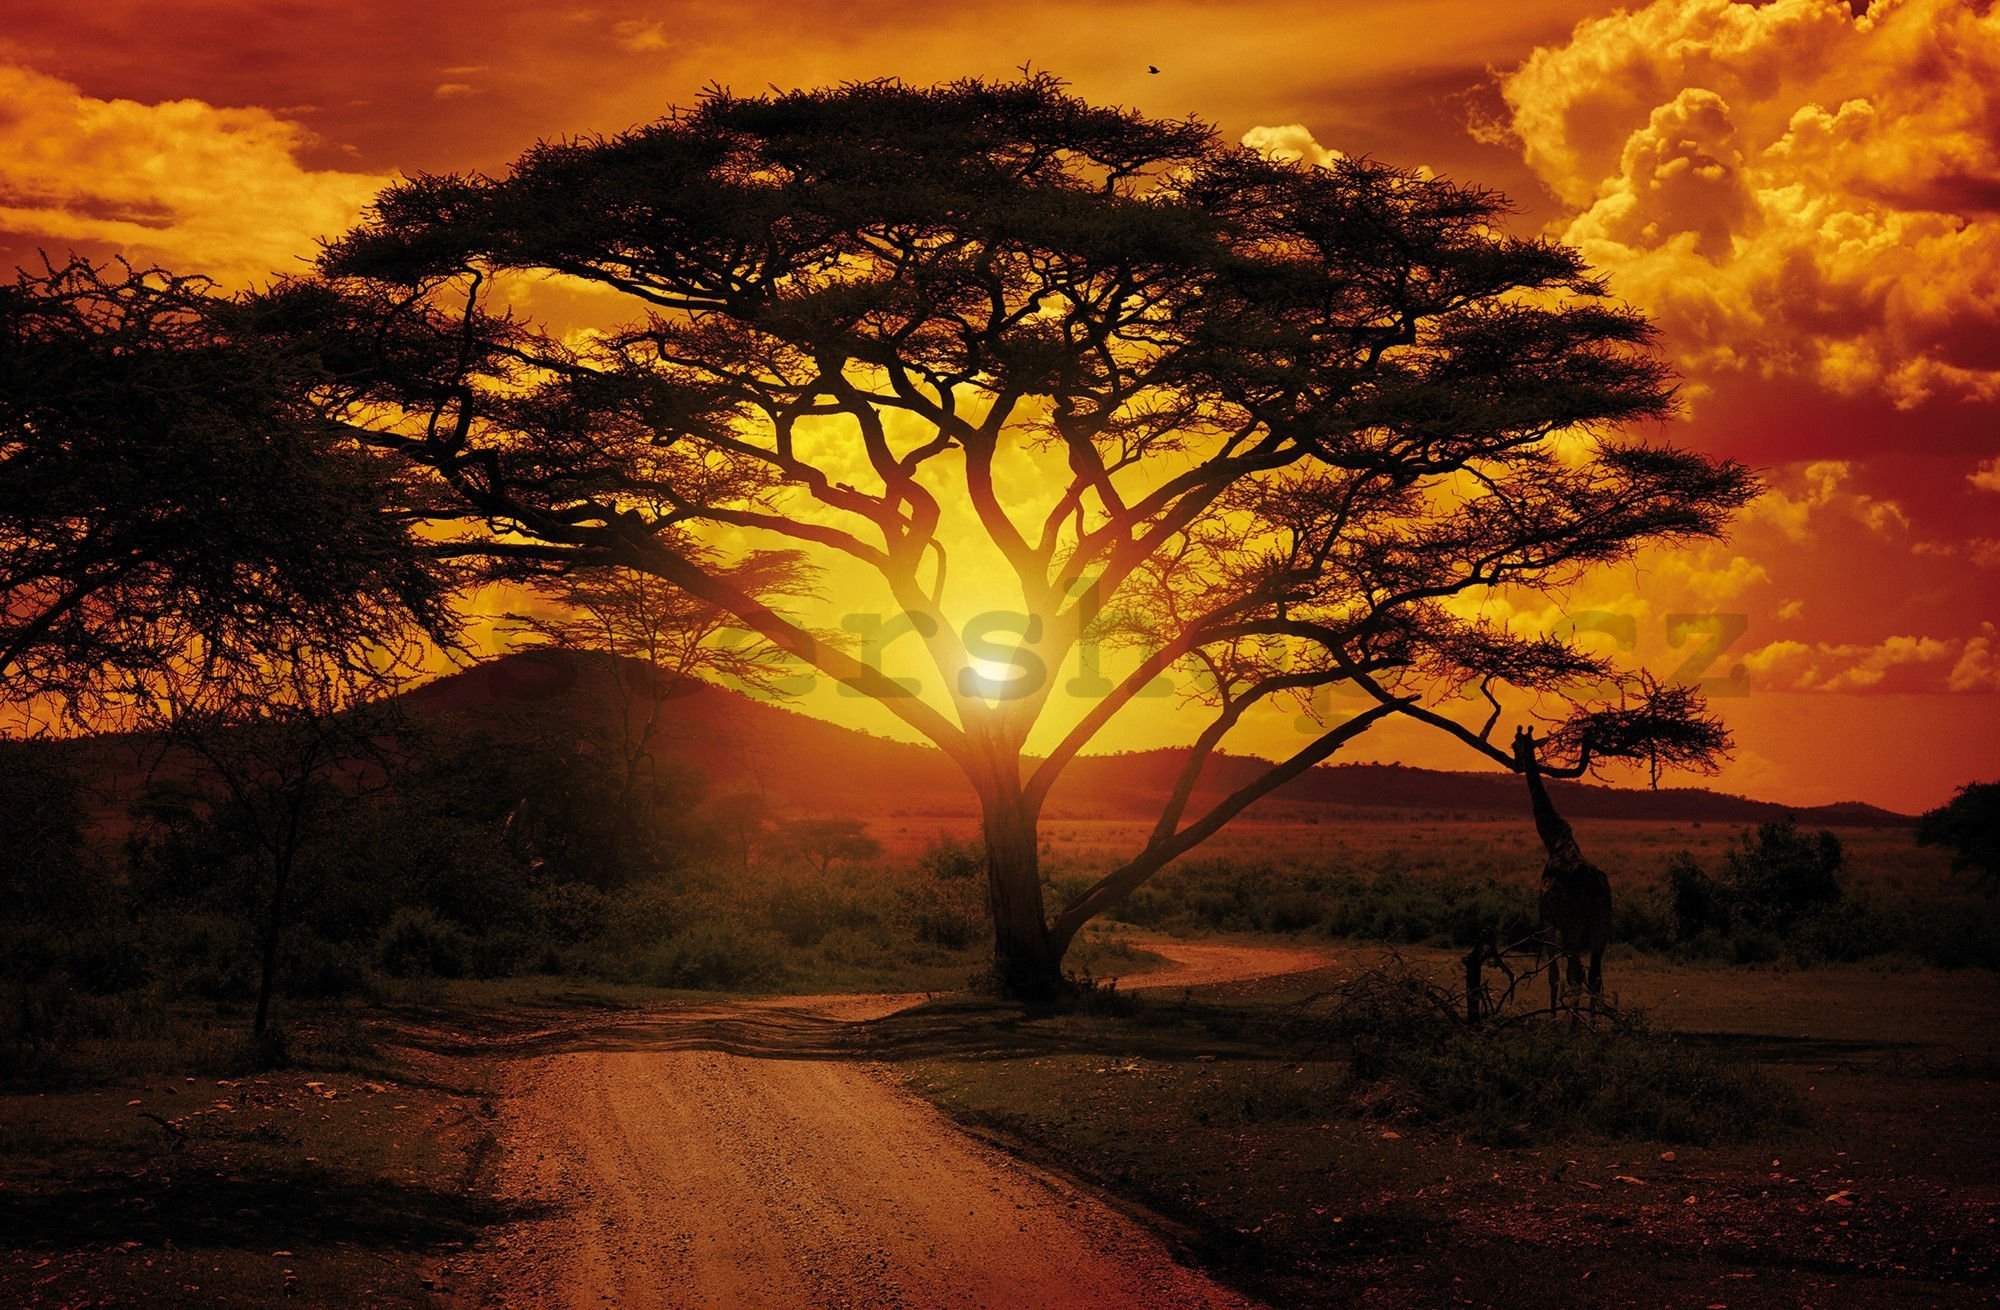 Fototapeta vliesová: Africký západ slunce - 104x70,5cm